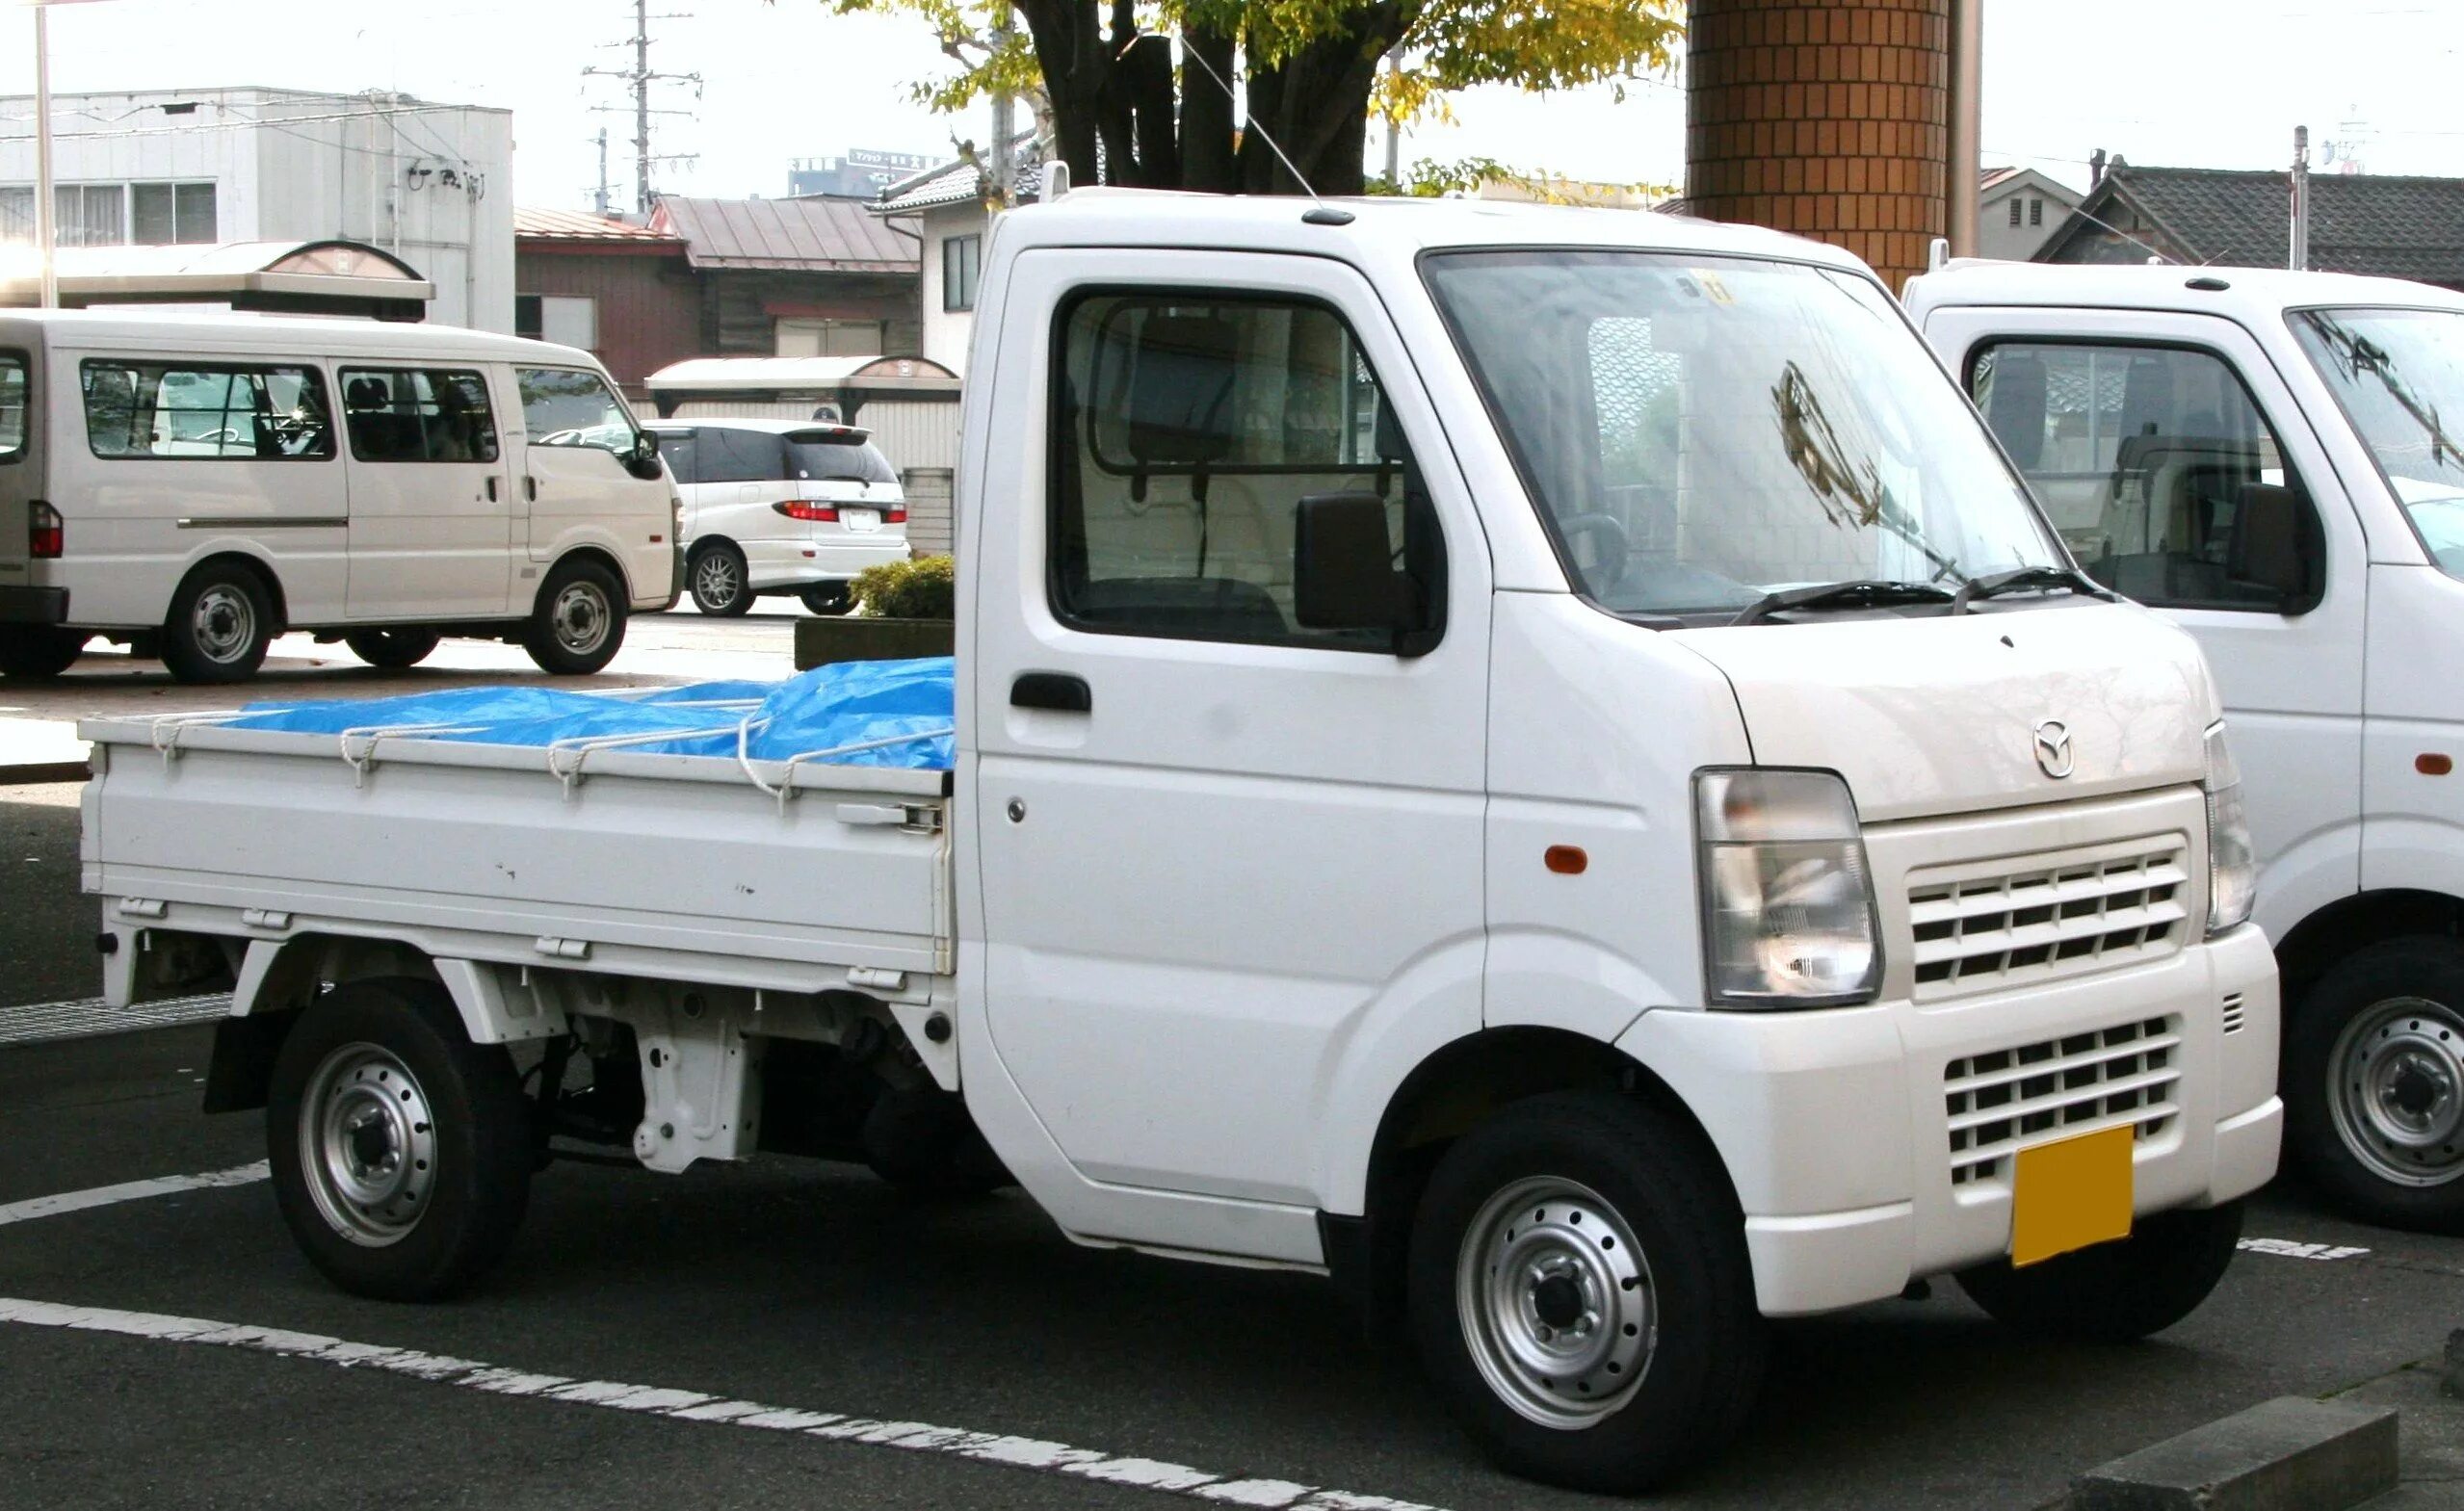 Мини грузовики до 1 тонны. Mazda Scrum Truck. Японские минигрузовики 4вд. Mazda Scrum Truck, 1999. Mazda модель: Scrum Truck.